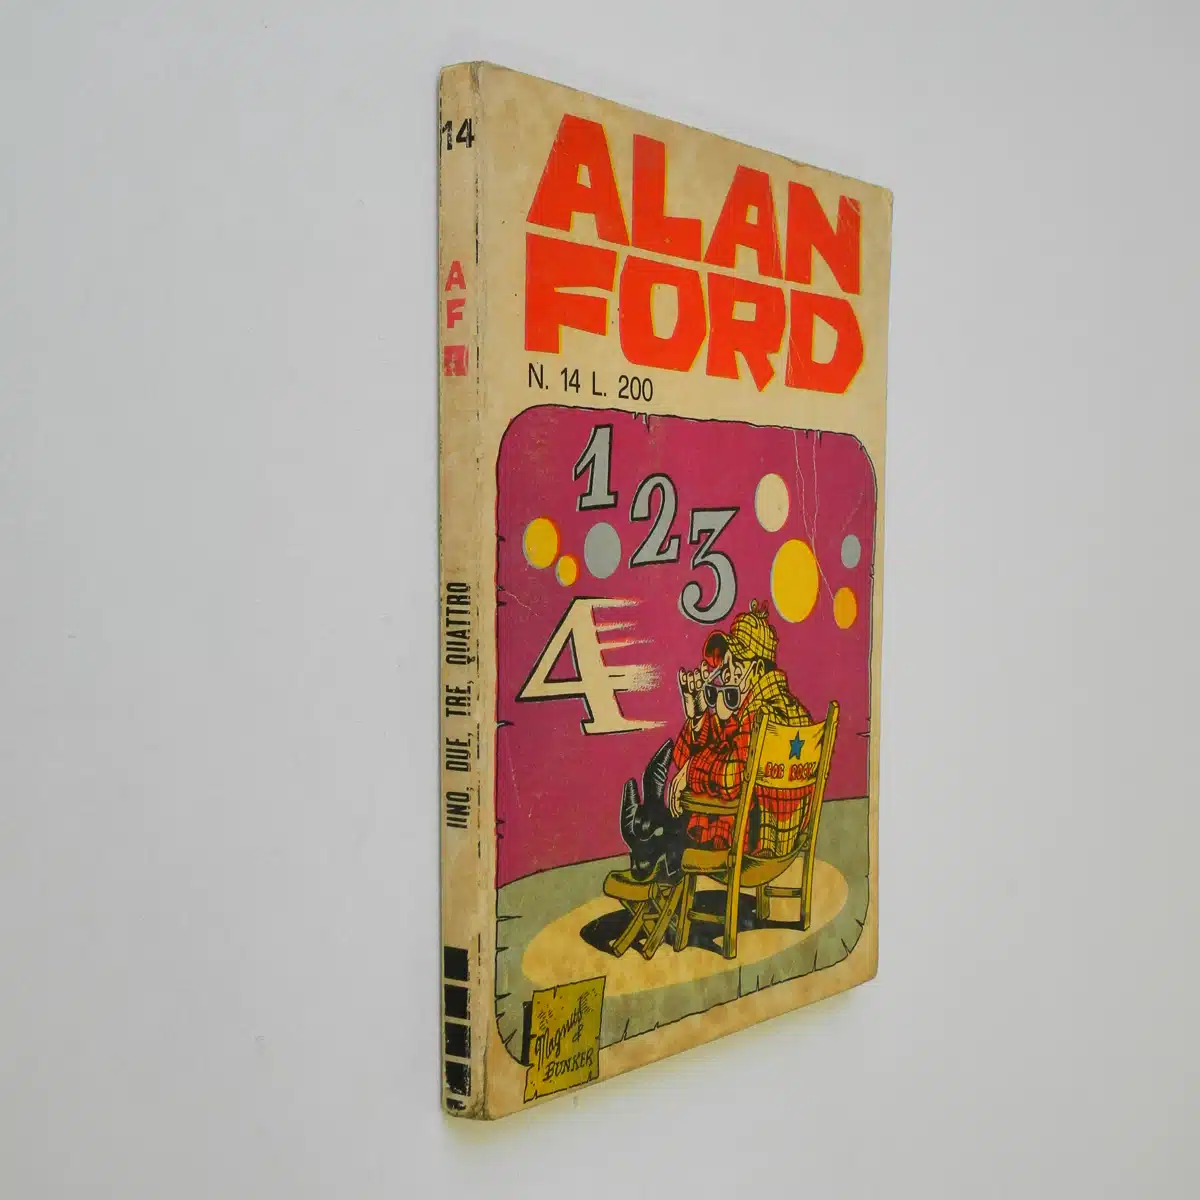 Alan Ford n. 14 con Adesivi Uno, due, tre, quattro